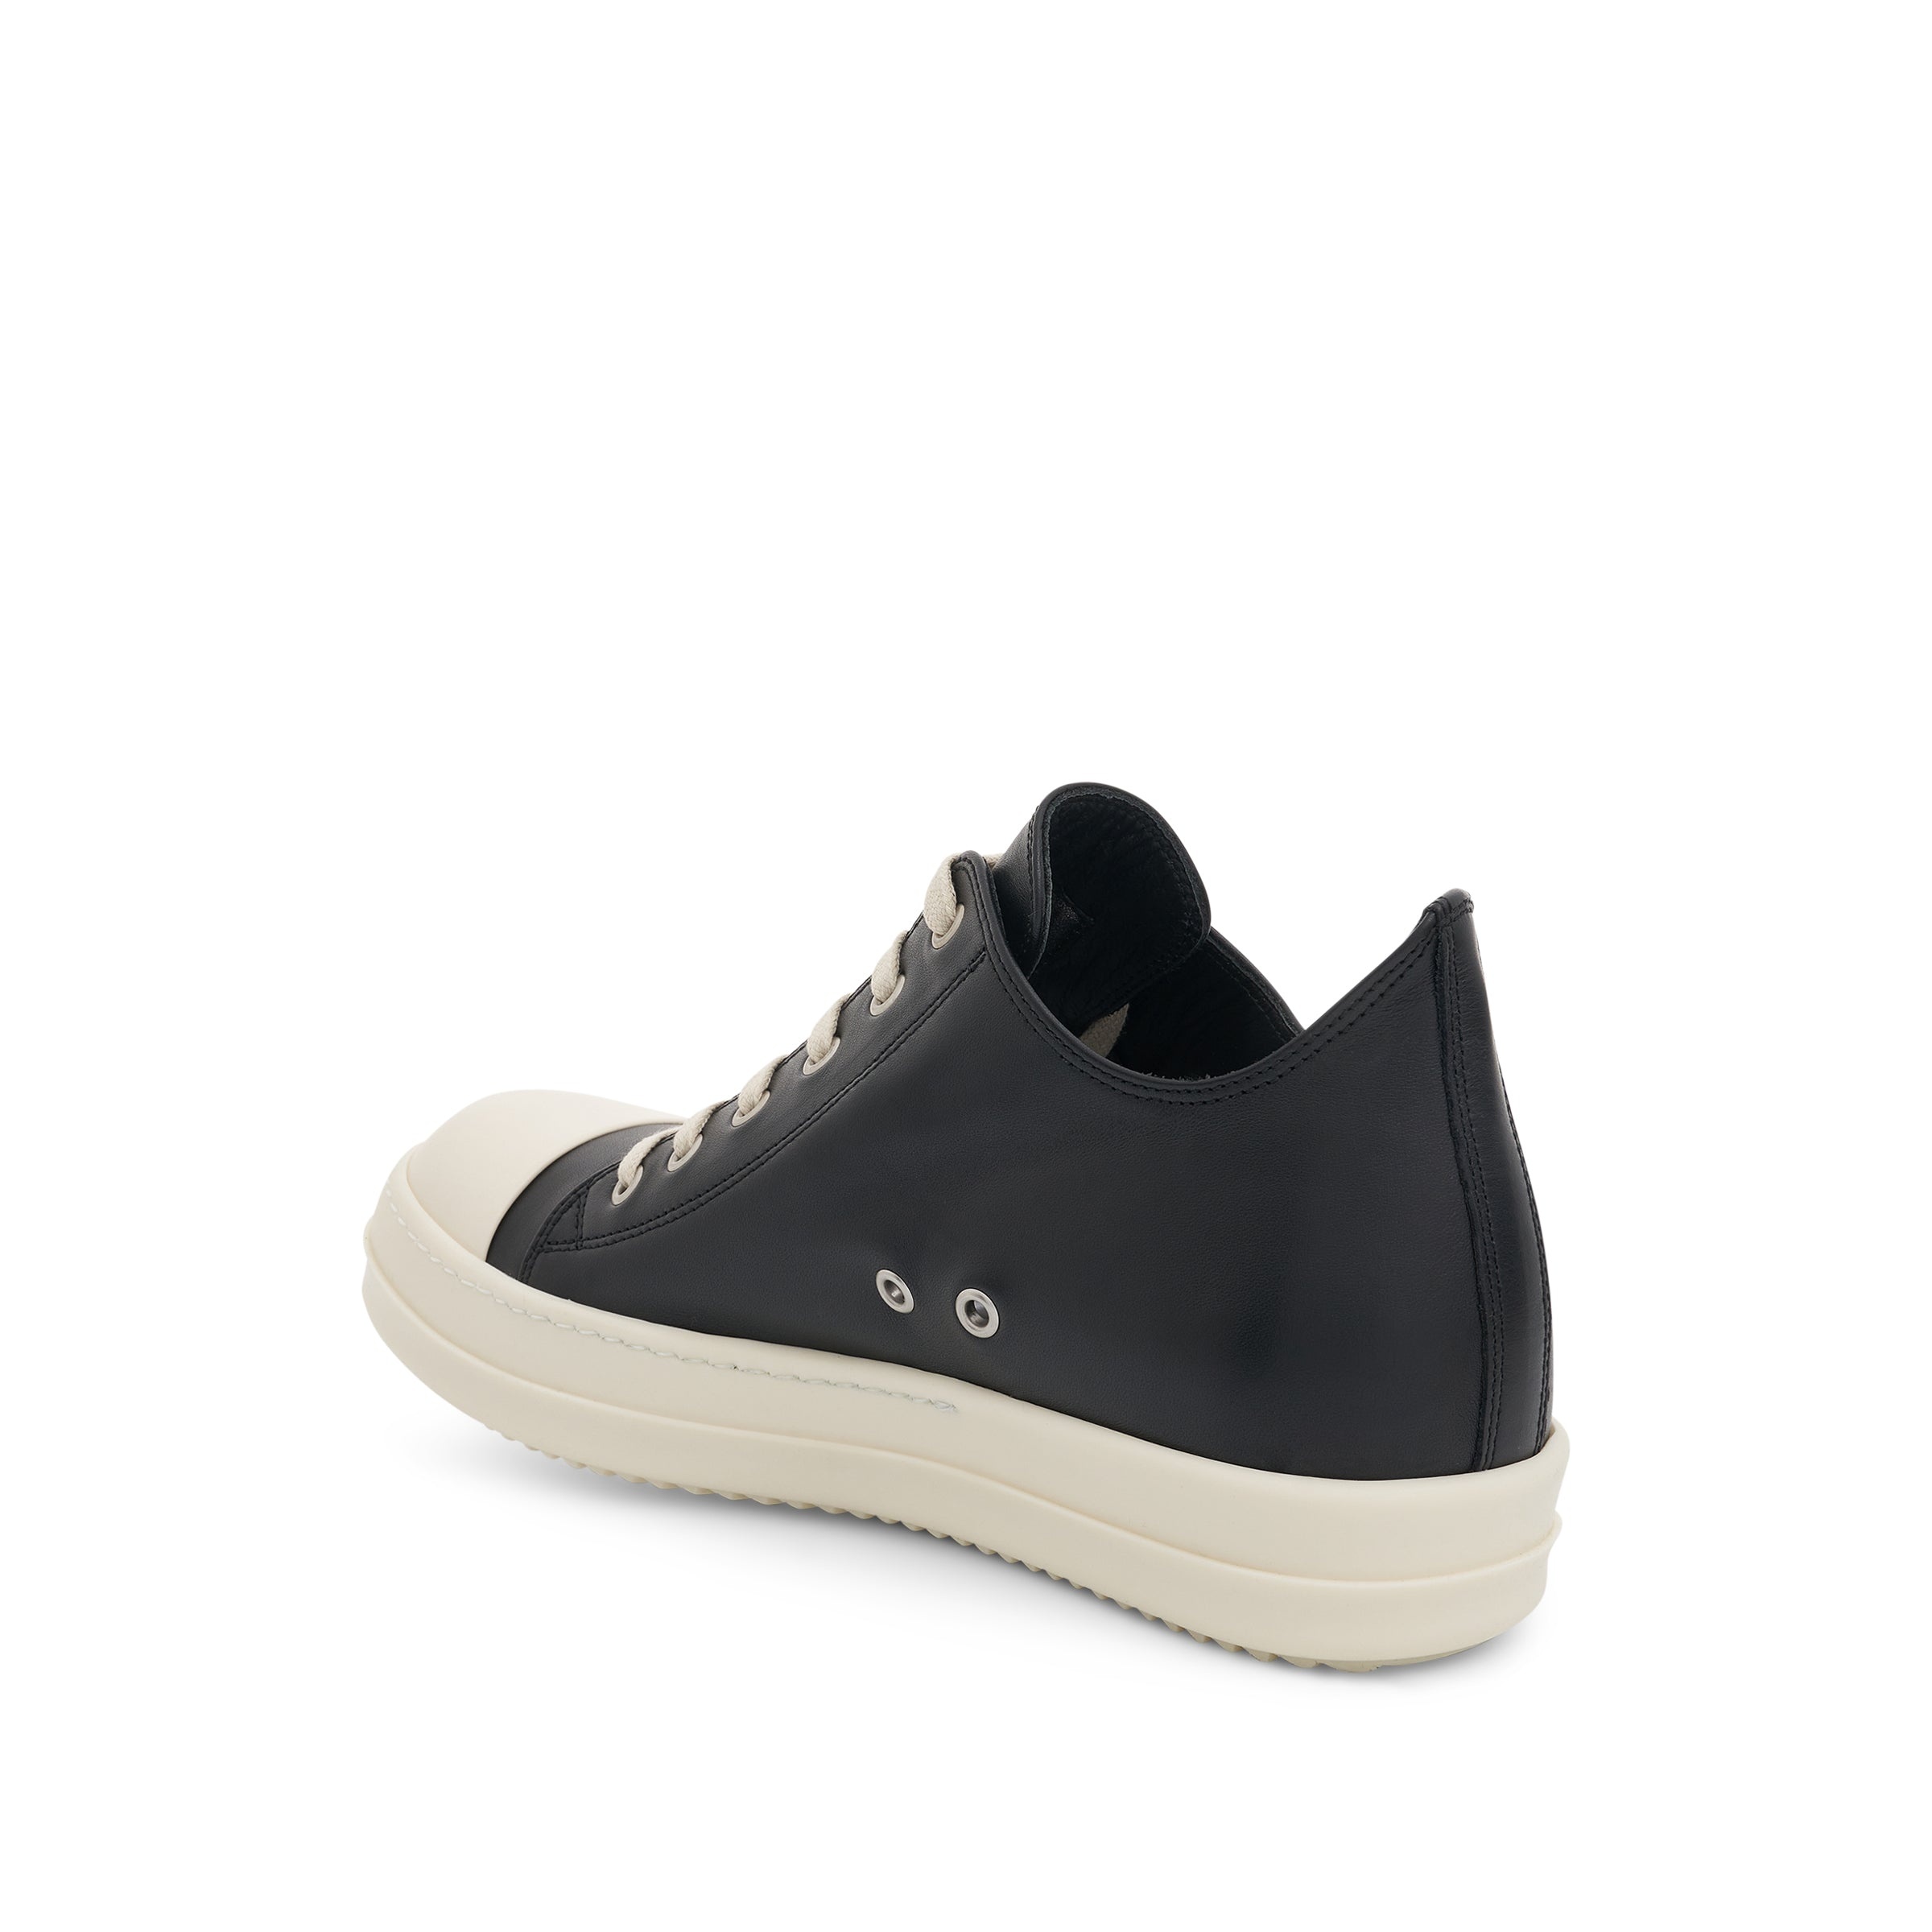 EDFU Low Leather Sneaker in Black/Milk - 3